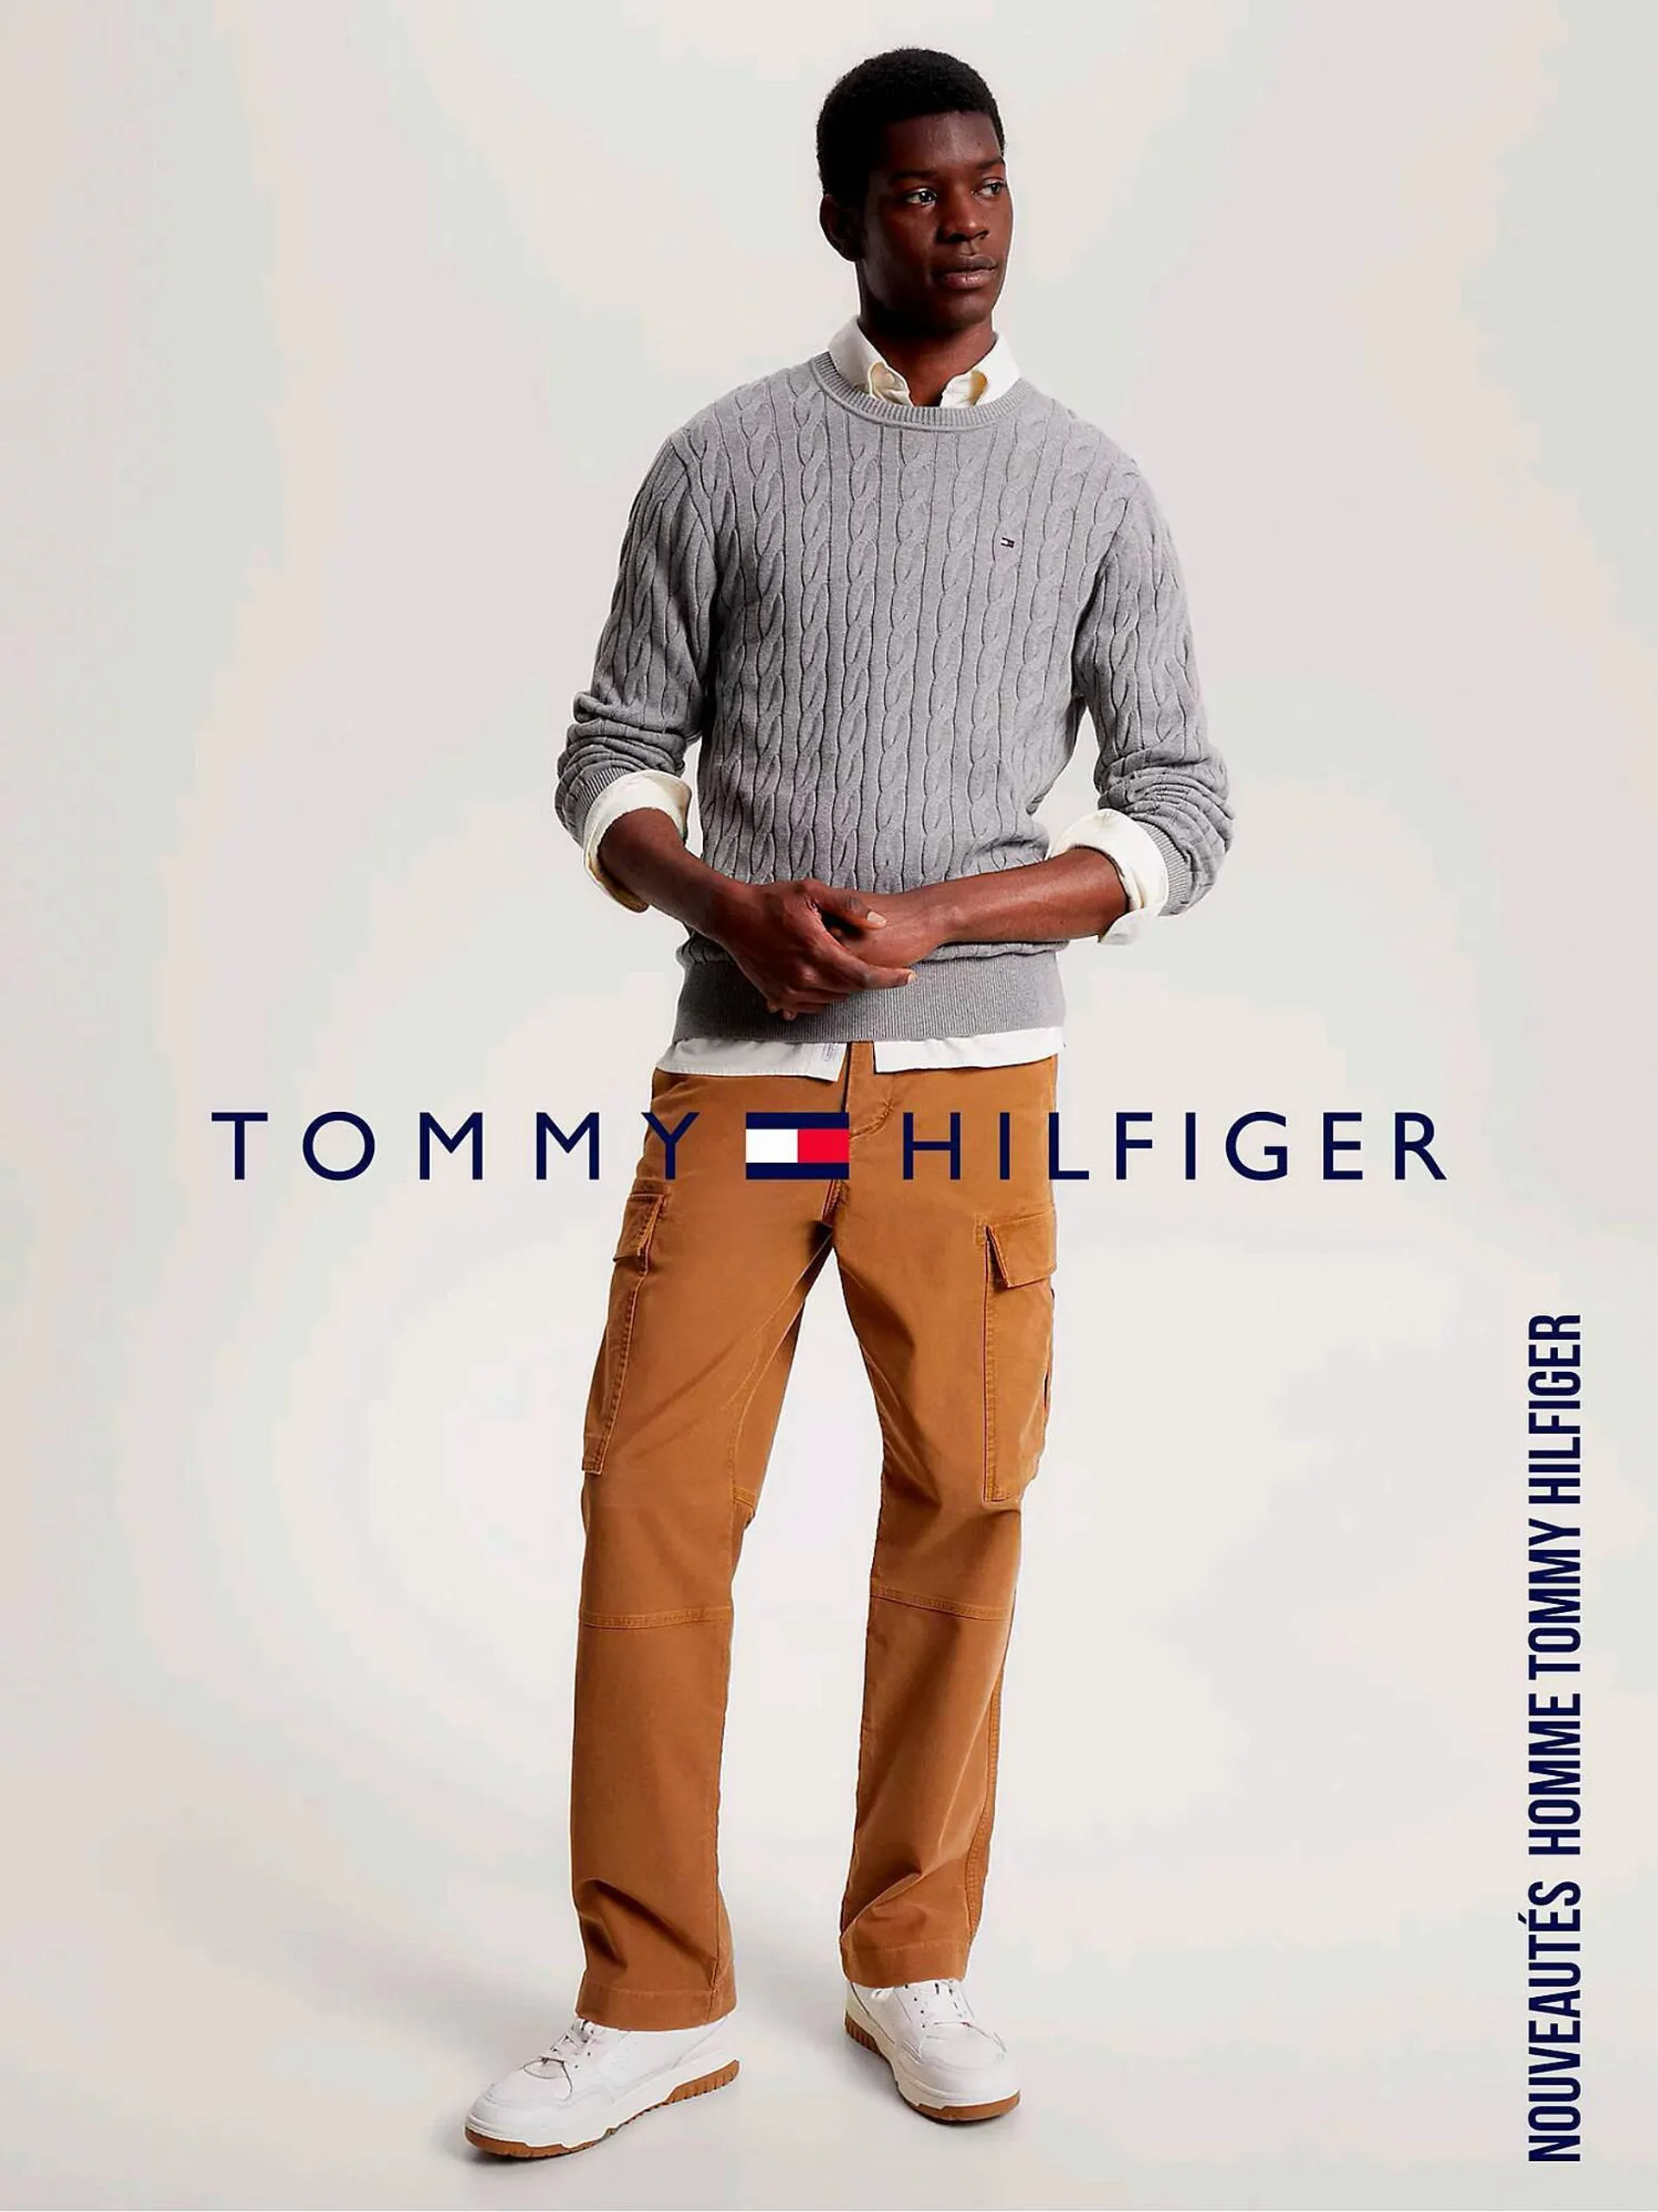 Tommy Hilfiger folder - 1